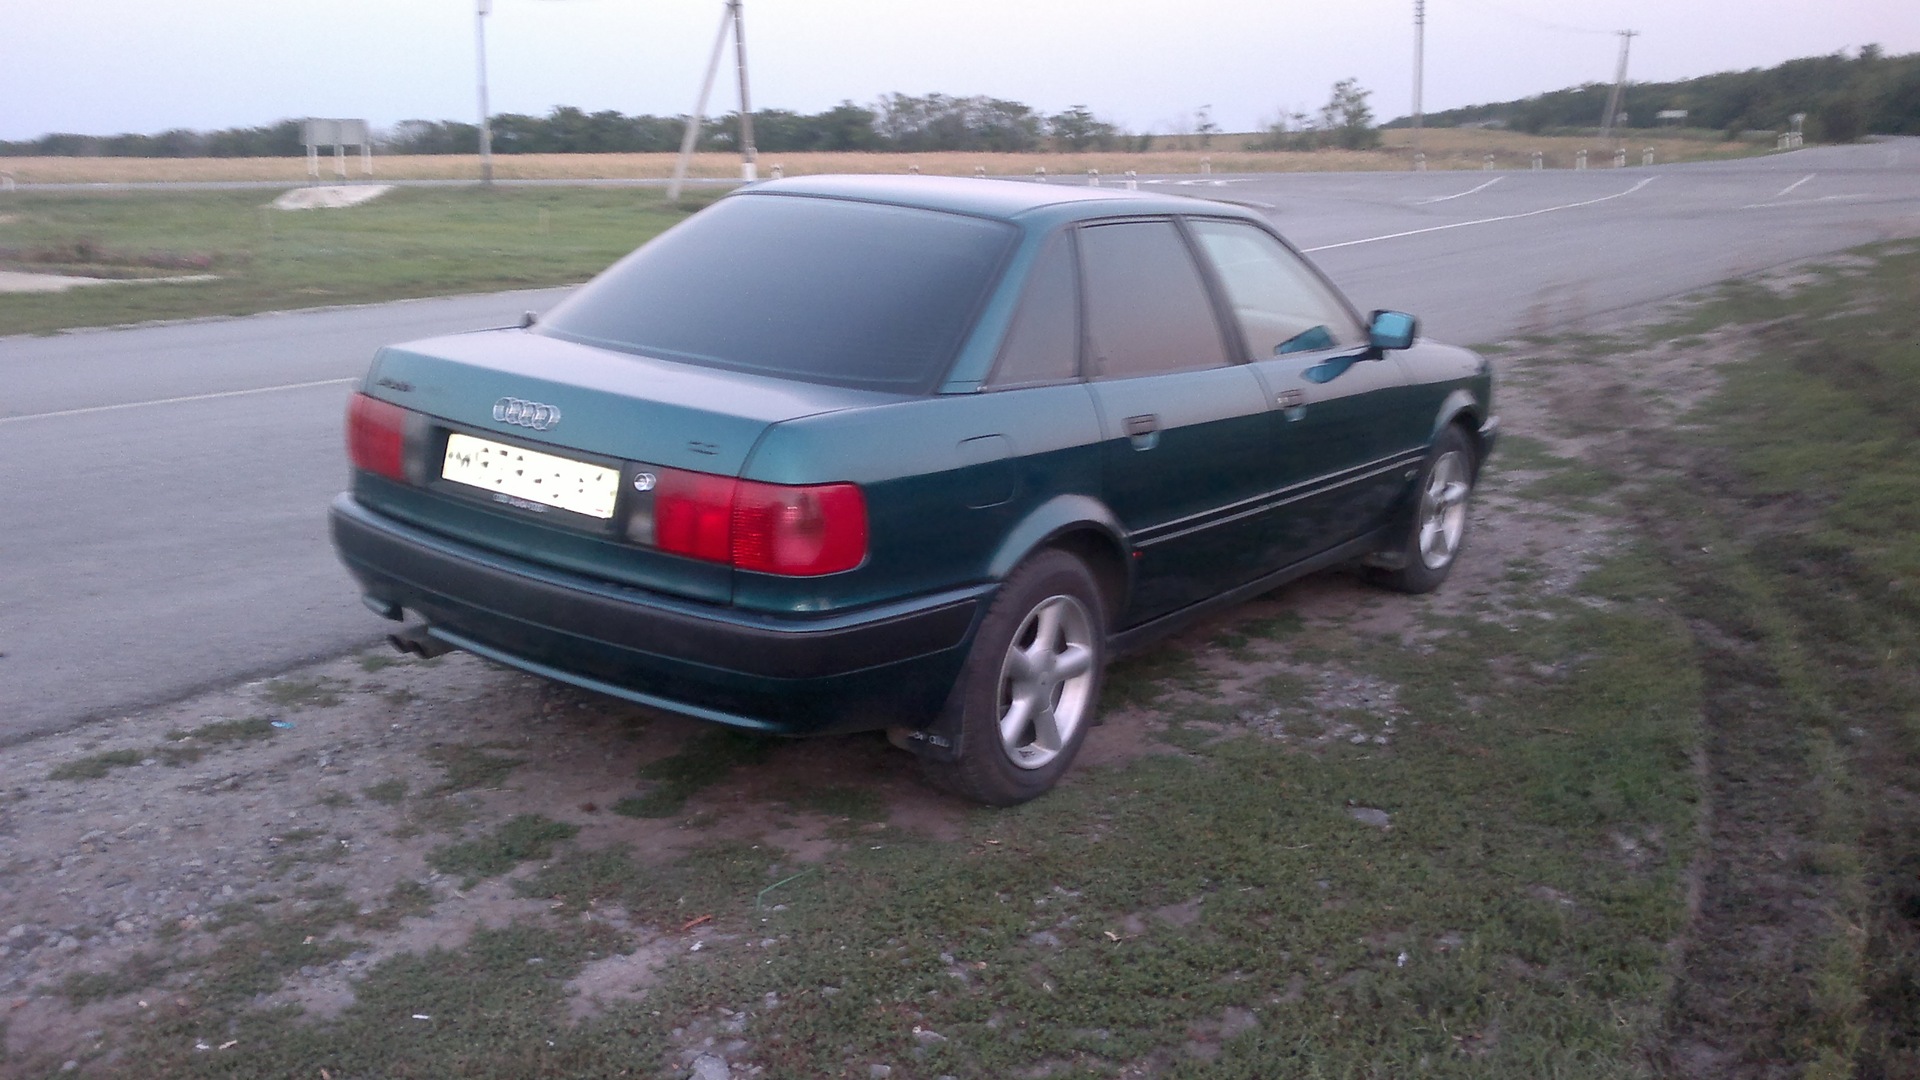 Куплю ауди 80 б у. Audi 80 b4 зеленая. Ауди 80 б4 зеленая. Ауди 80 1992. Ауди 80 б4 темно зеленый металлик.